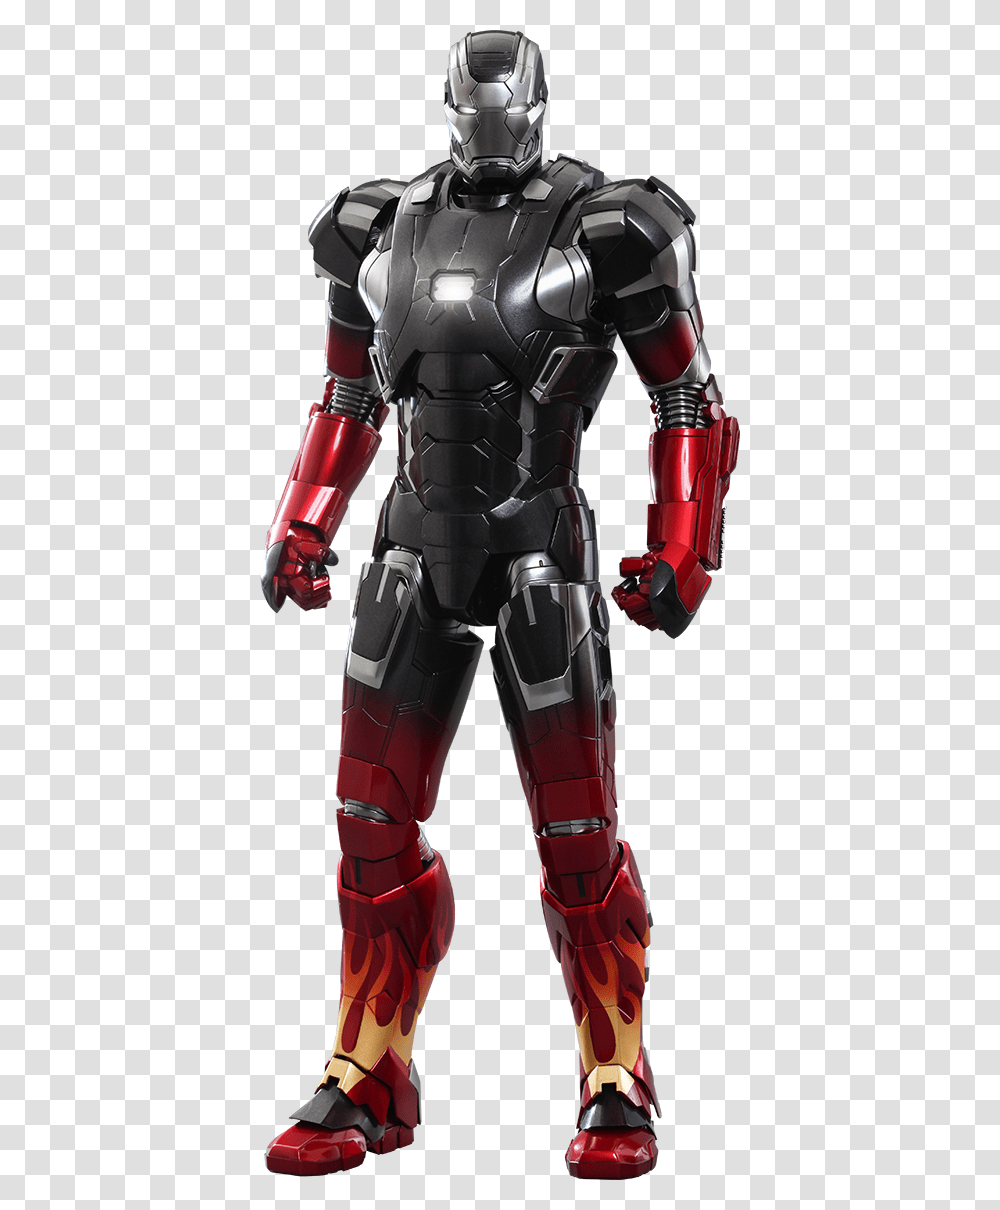 Iron Man, Character, Toy, Robot, Armor Transparent Png